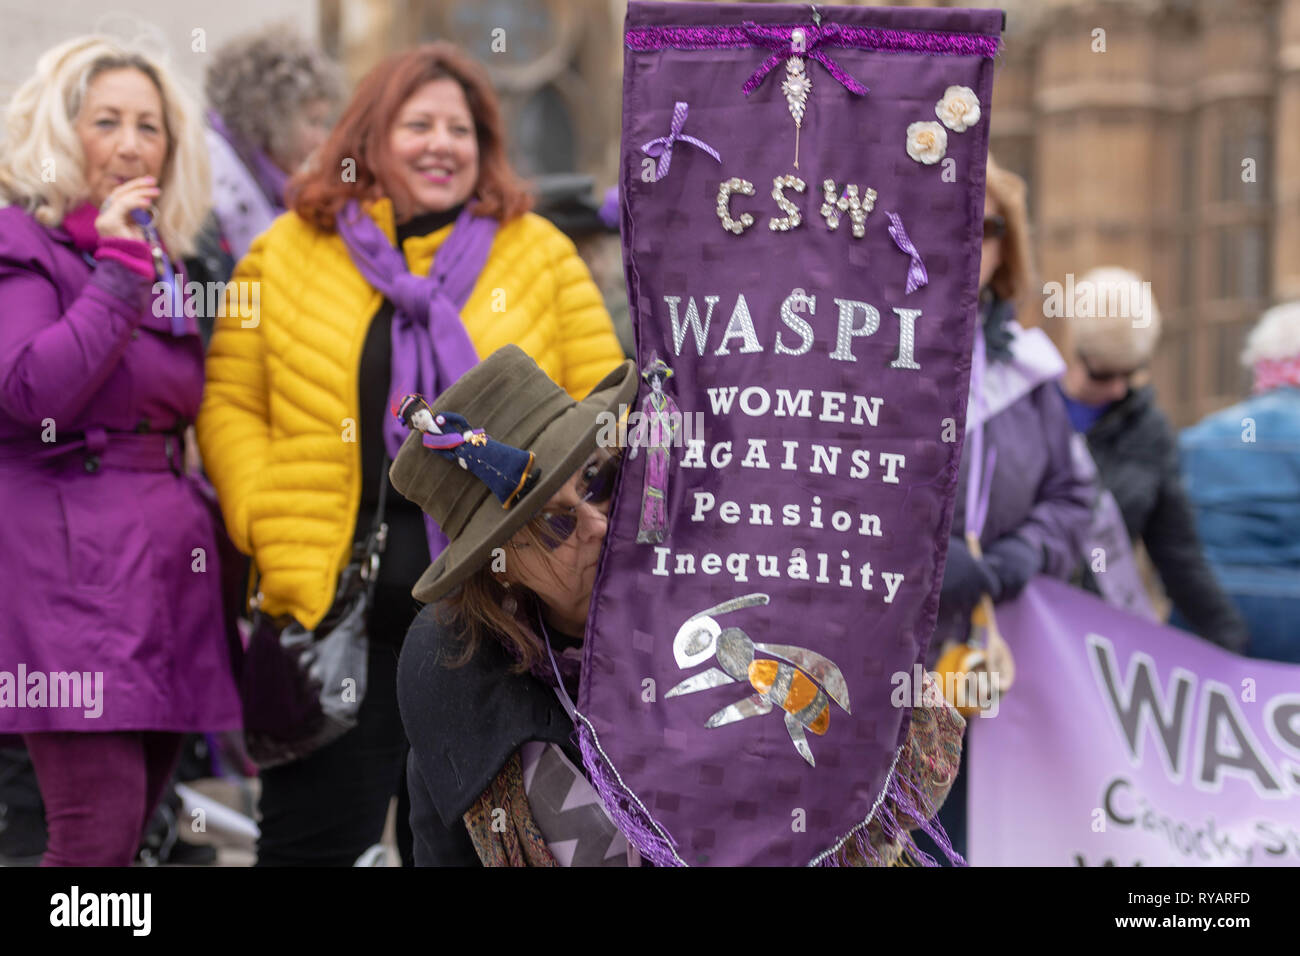 Londra 13 marzo 2019 Donne contro la pensione statale Inequlity (WASPI) protestare al di fuori della Camera dei comuni sulla dichiarazione di primavera giorno circa lo spostamento dell'età pensionabile da 60 a 66 per introdurre la parità tra il maschio e la femmina di credito pensioni: Ian Davidson/Alamy Live News Foto Stock